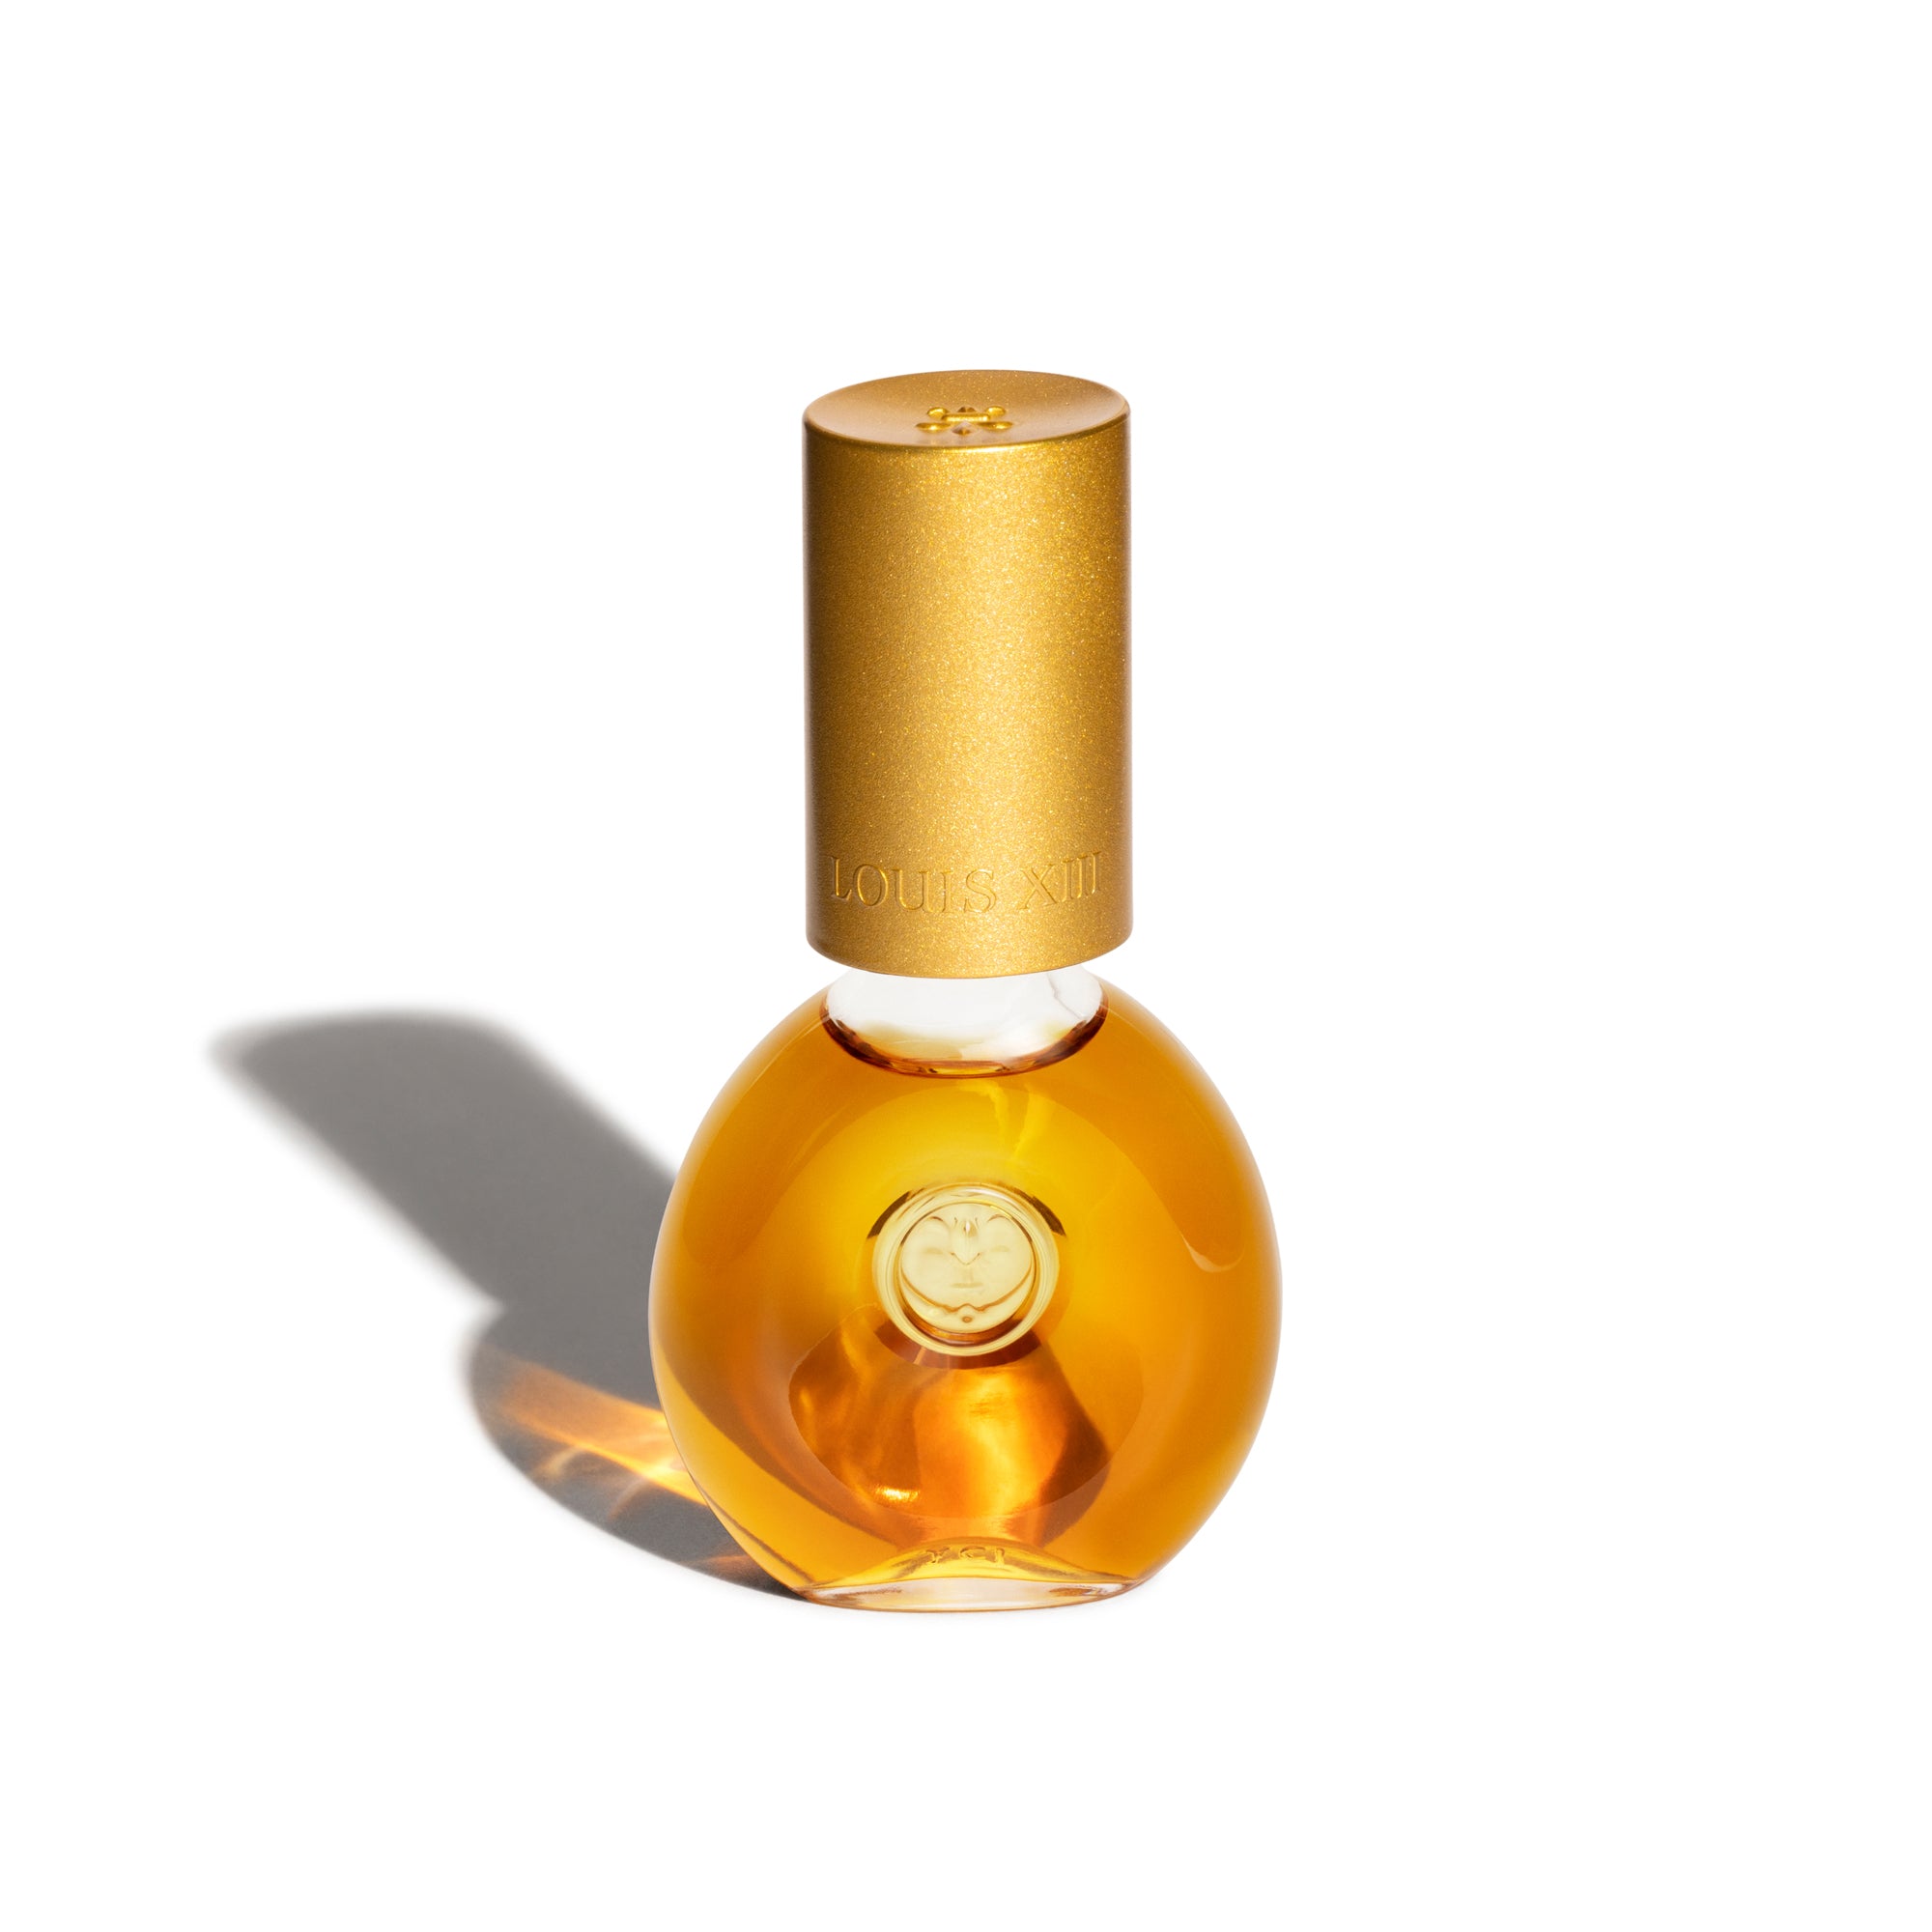 Louis XIII Cognac Launches Rare Cask 42.1